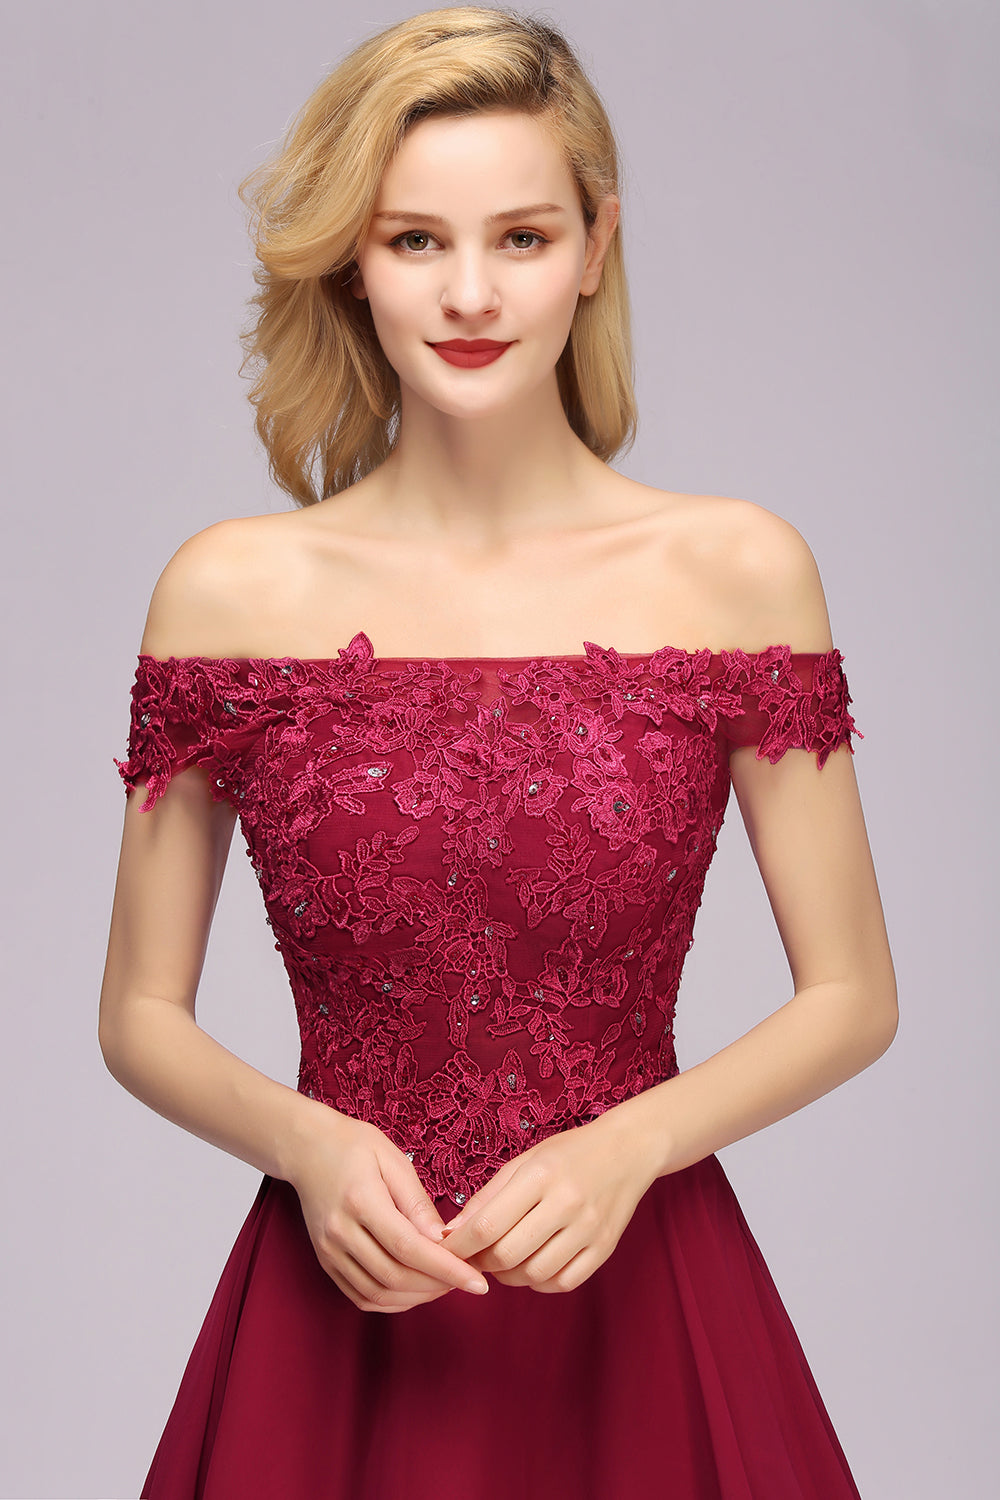 Gorgeous Lace Off-the-shoulder Short Burgundy Bridesmaid Dresses Online